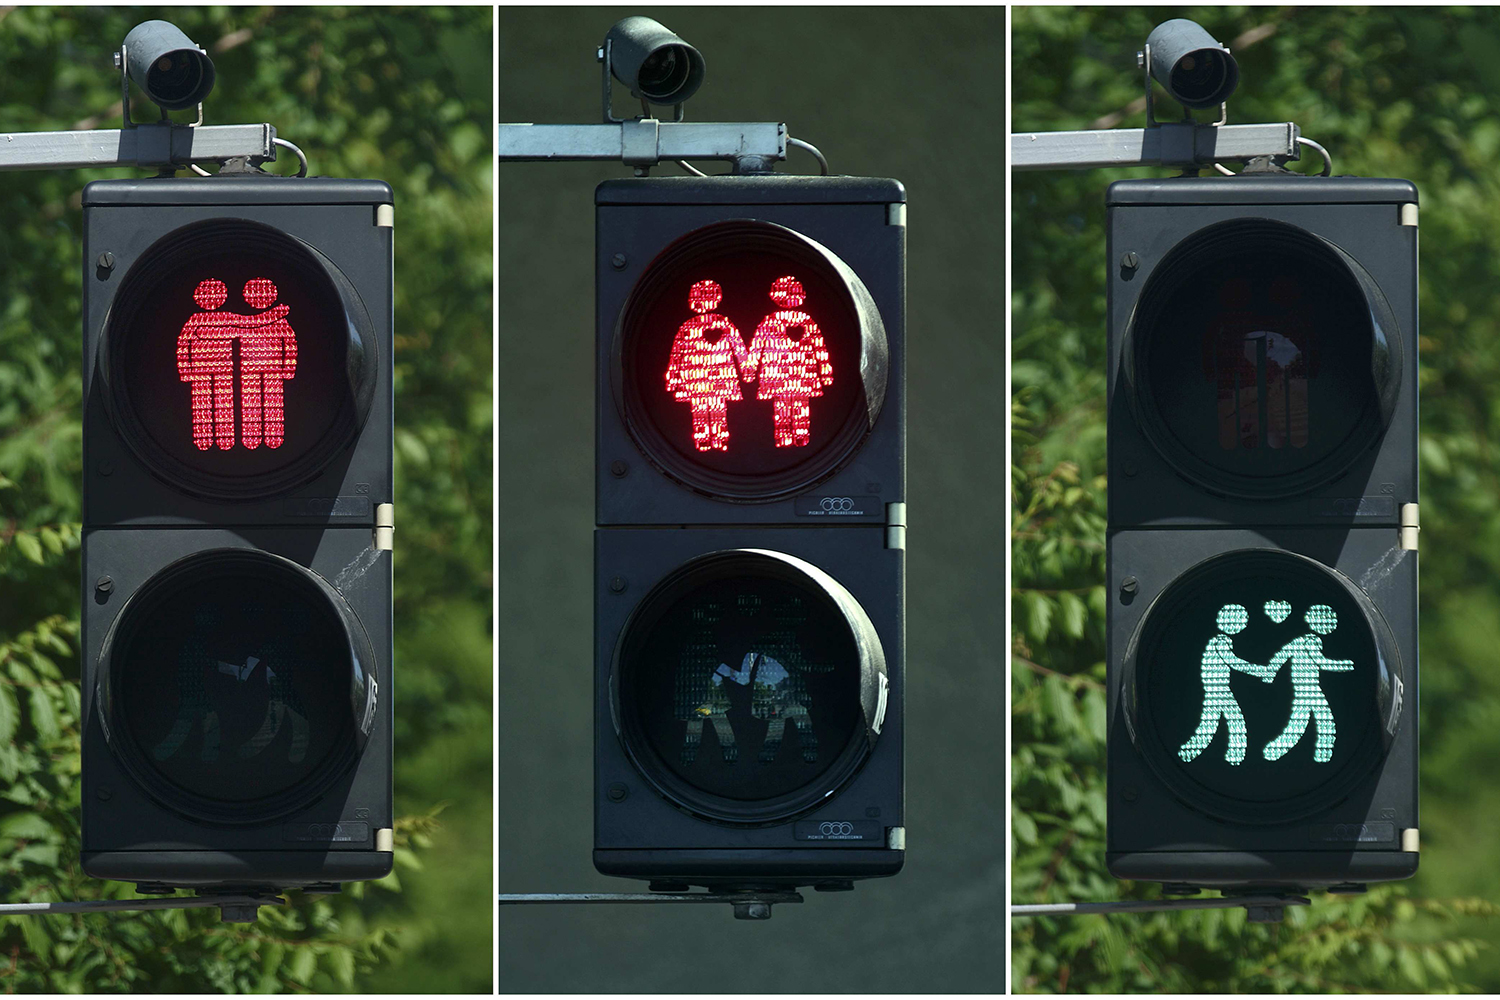 Viena pone en las luces de sus semáforos a parejas homosexuales